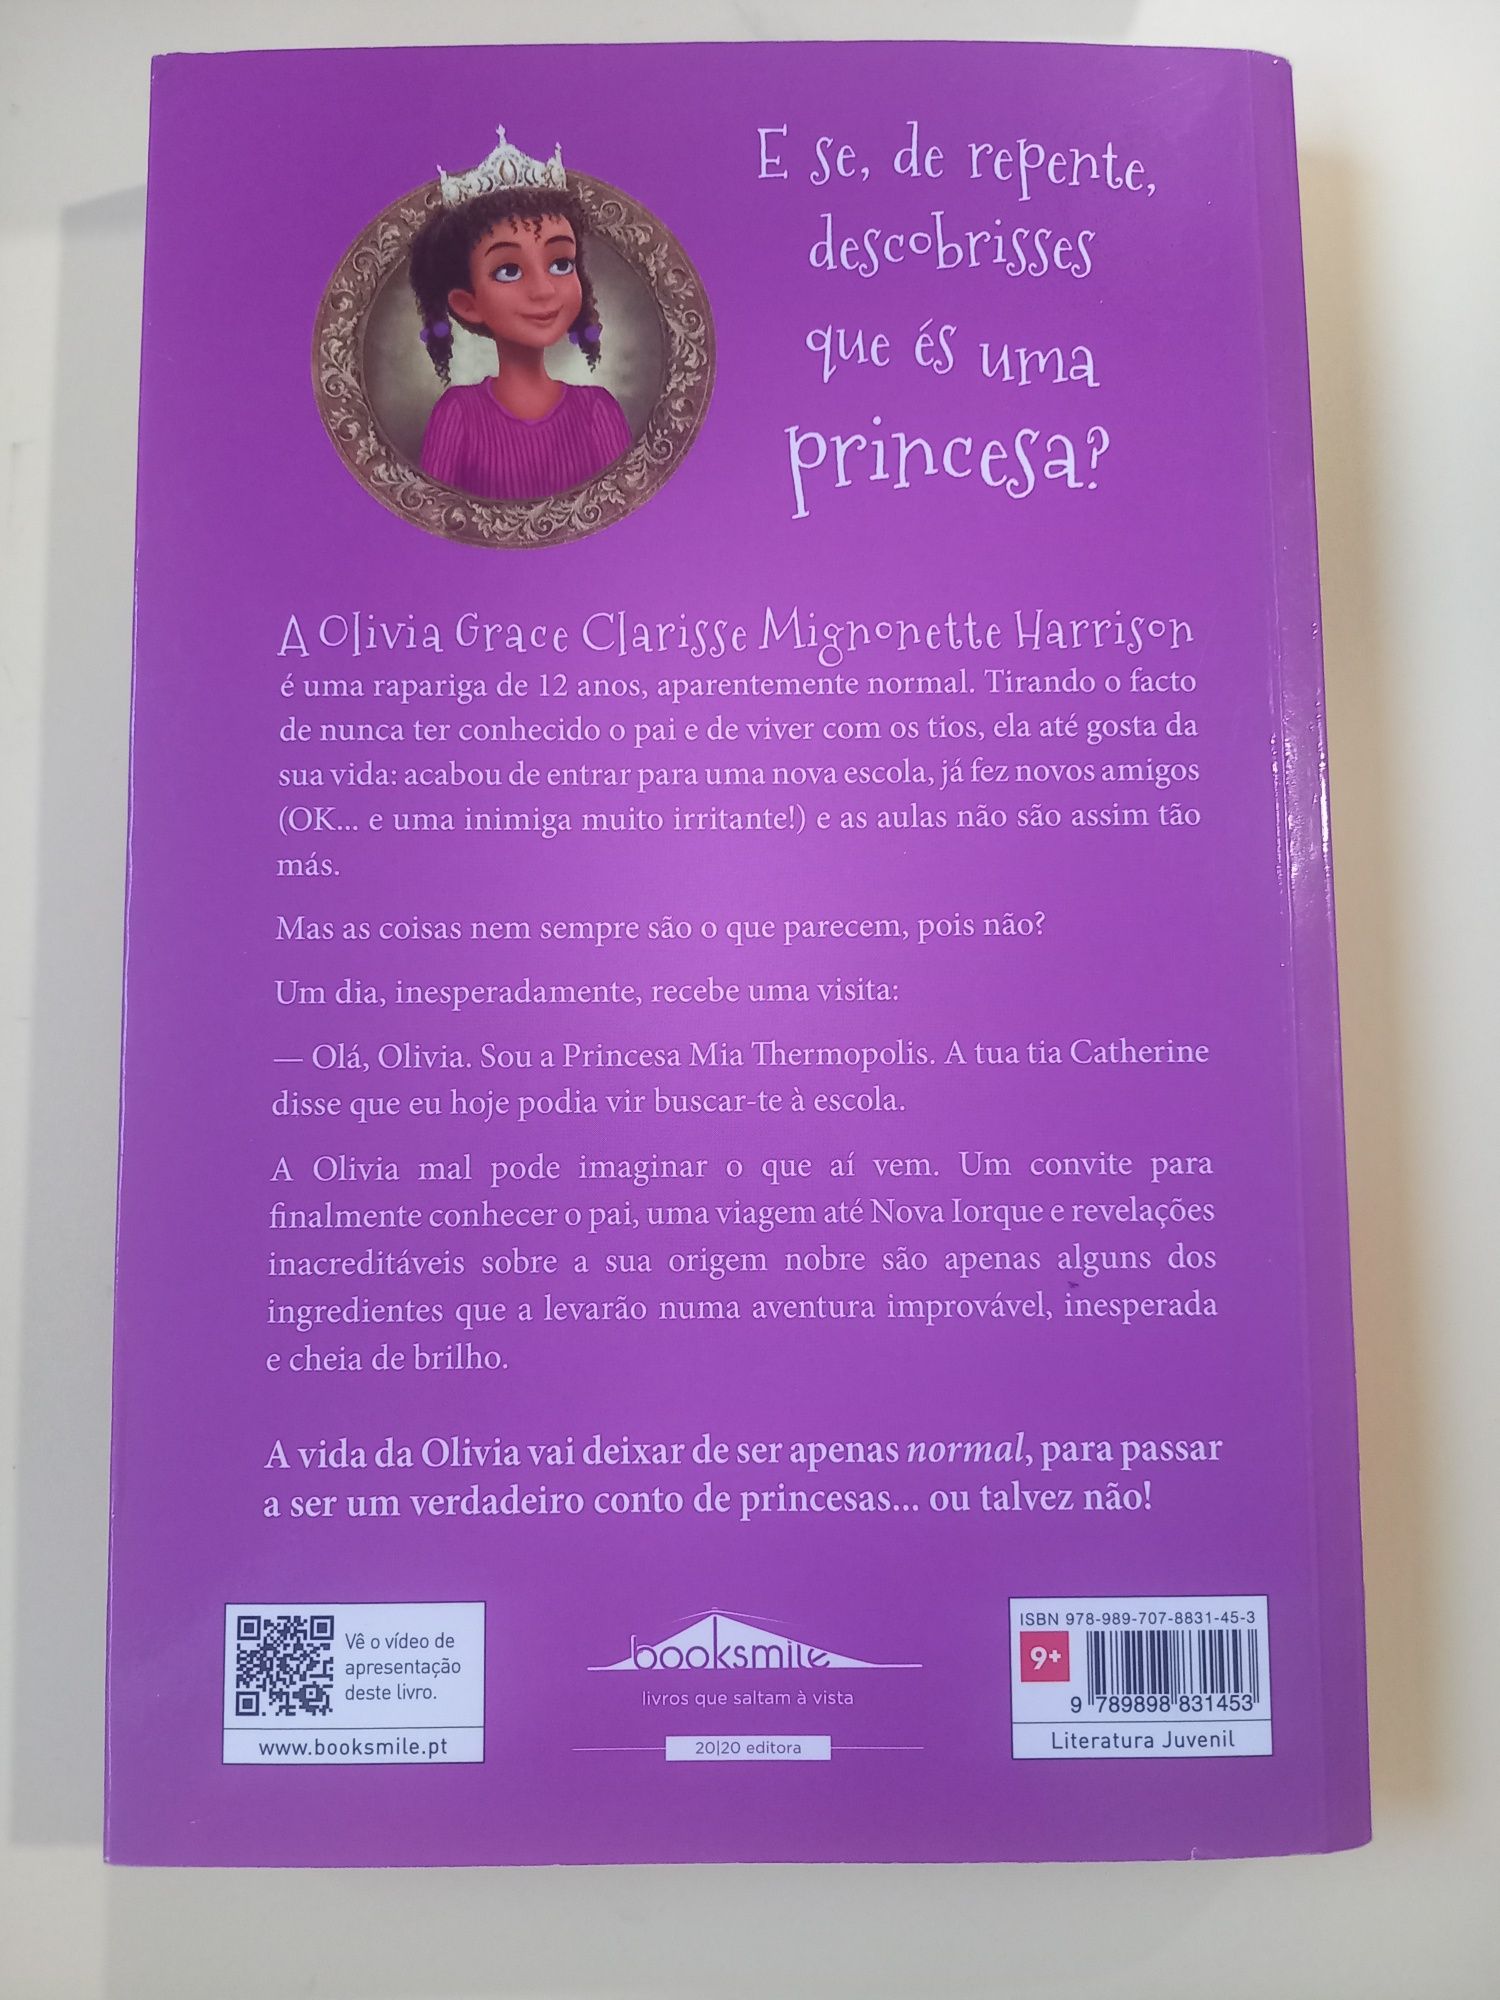 Livro de Meg Cabot - o diário de uma princesa improvável.